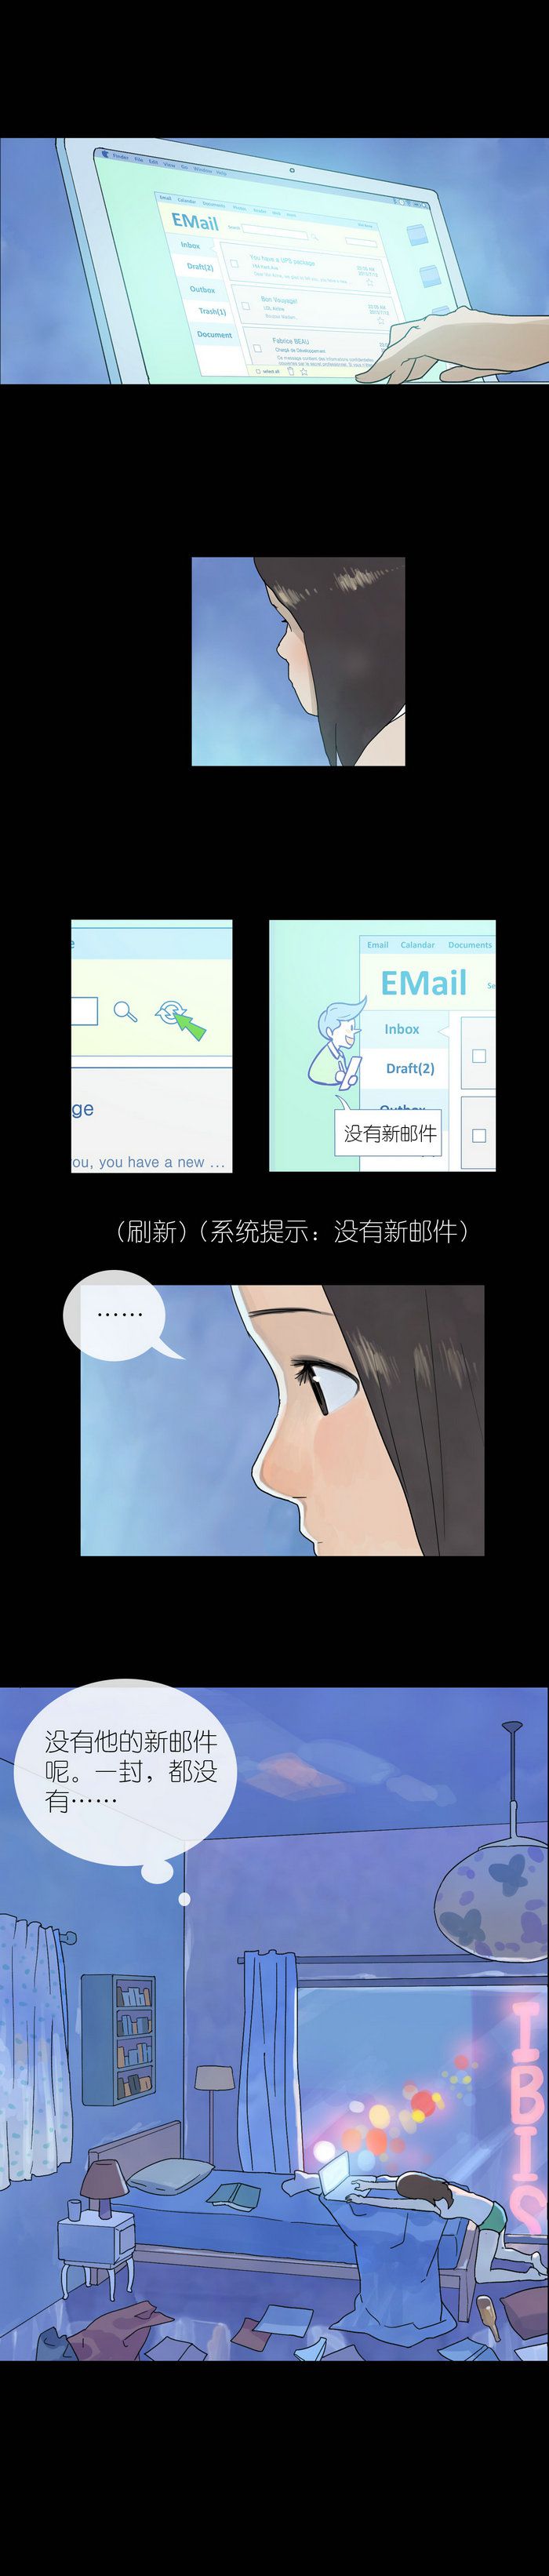 HelloVivian漫画 动漫星空 游民星空